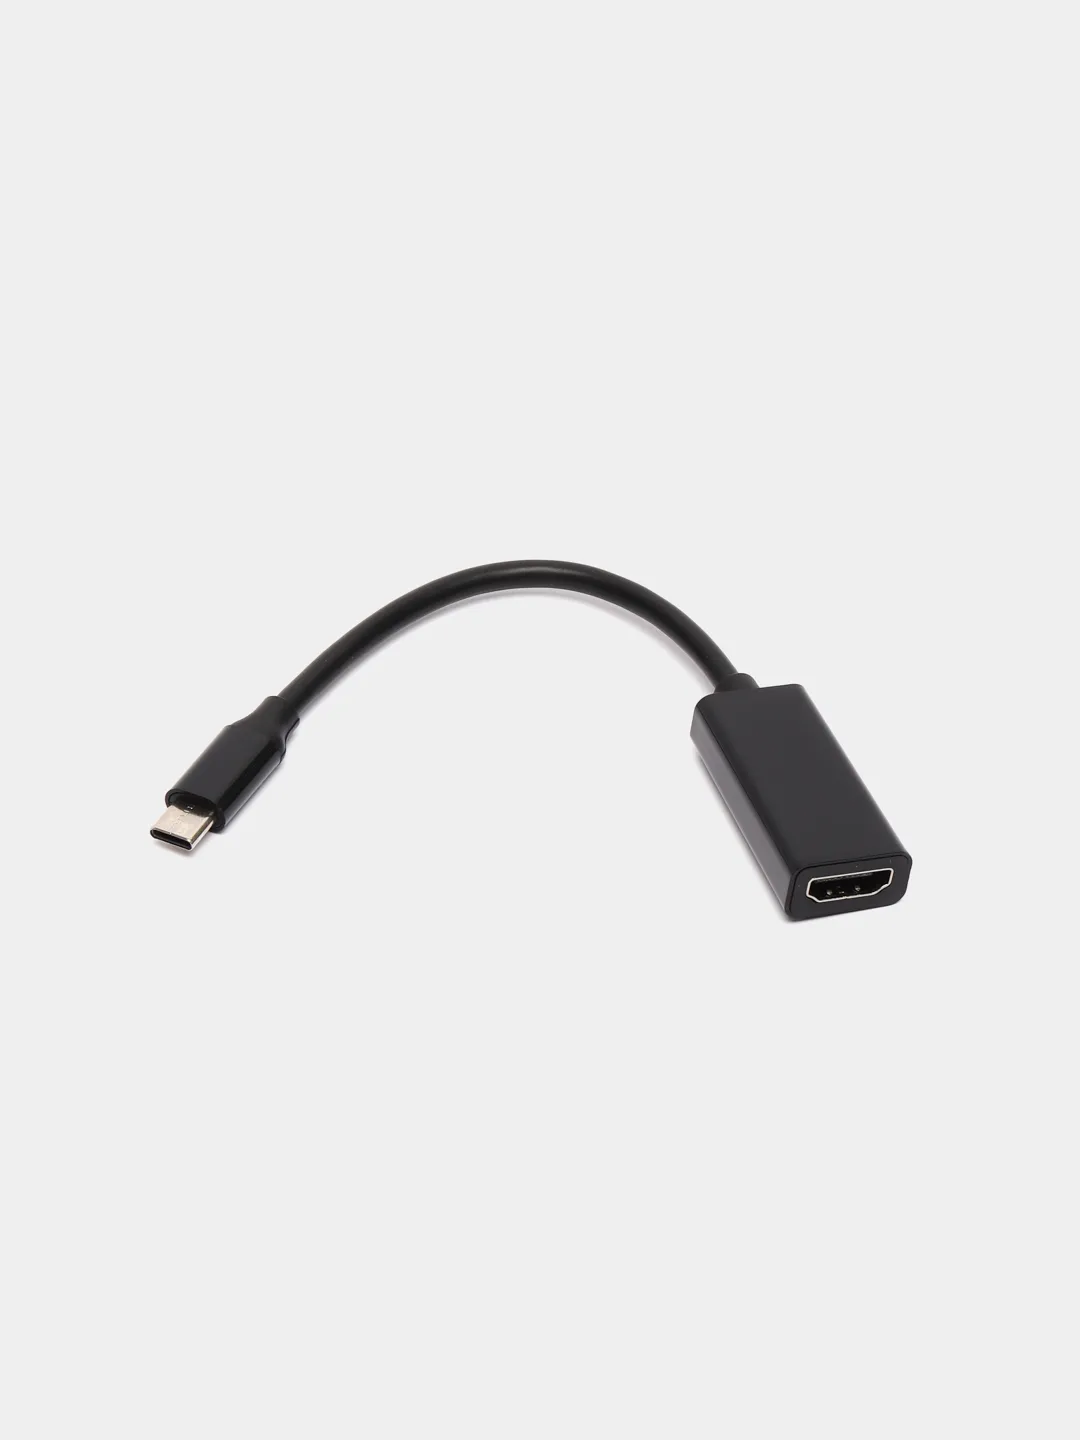 Переходник HDMI шт – micro USB шт, питание USB